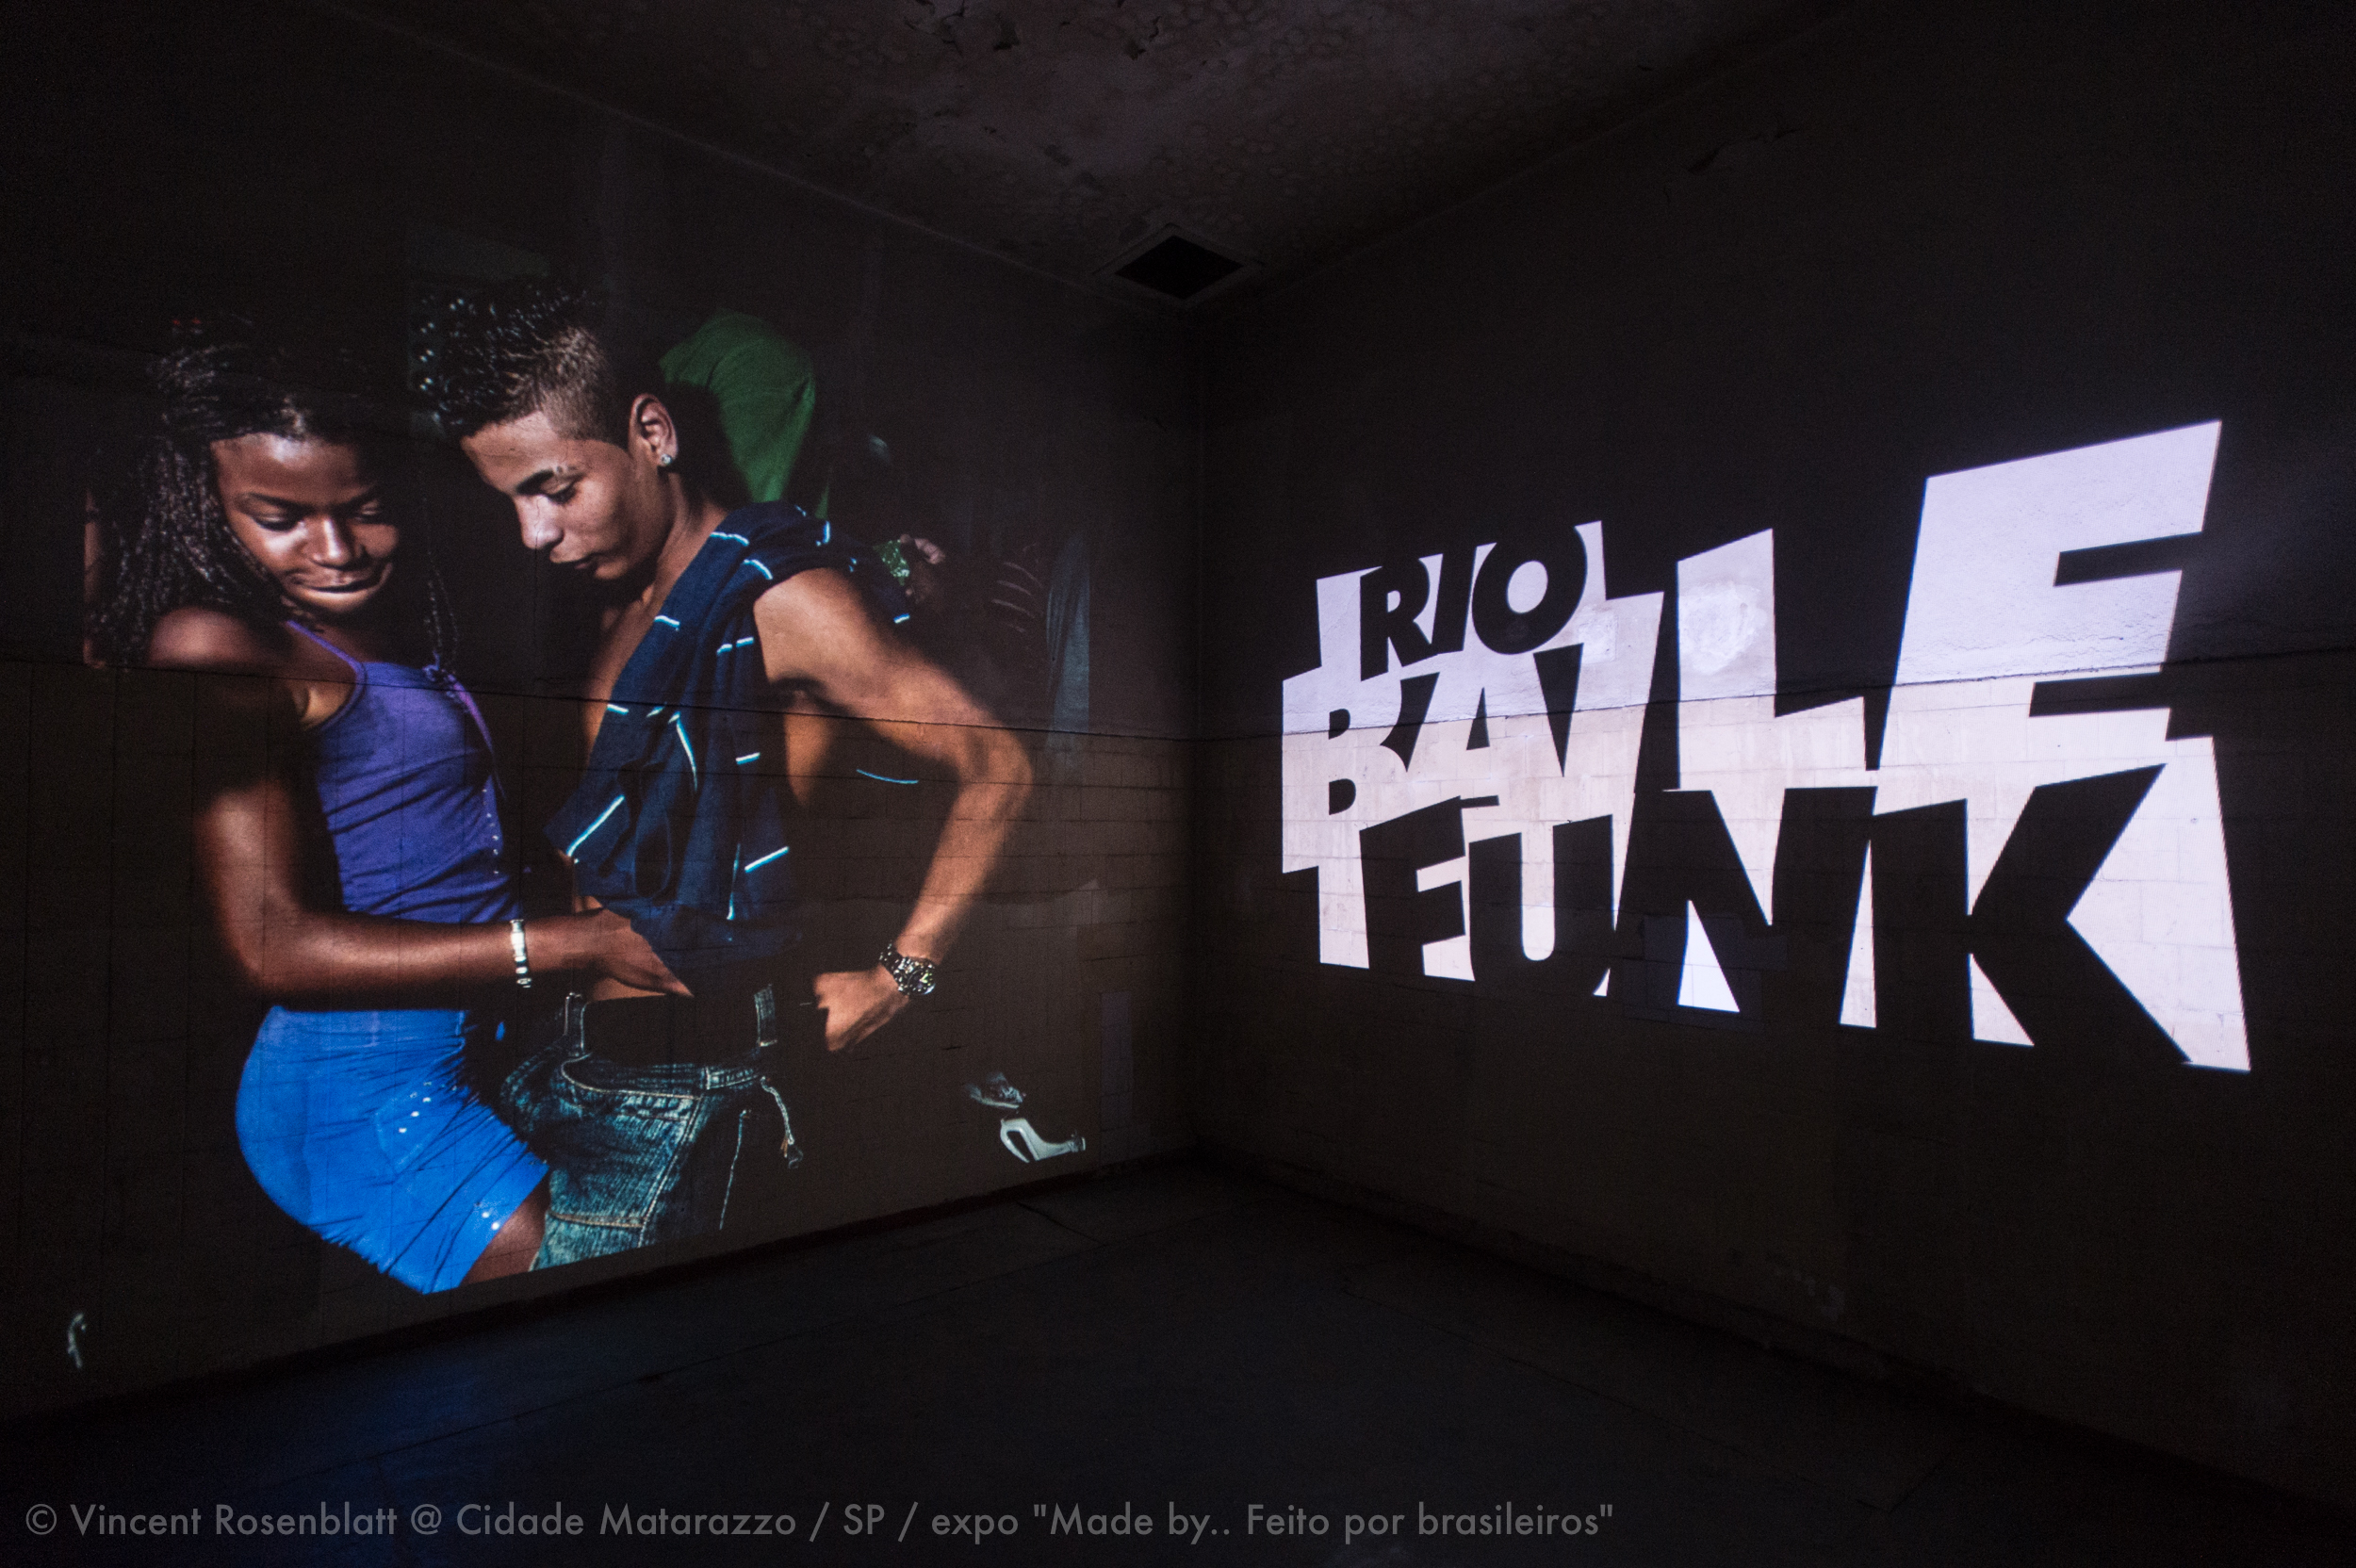  Instalação multimidia / Rio Baile Funk / © Vincent Rosenblatt / Expo "Made By.. Feito por  Brasileiros" Curadoria Marc Pottier na Cidade Matarazzo, São Paulo, 2014. 